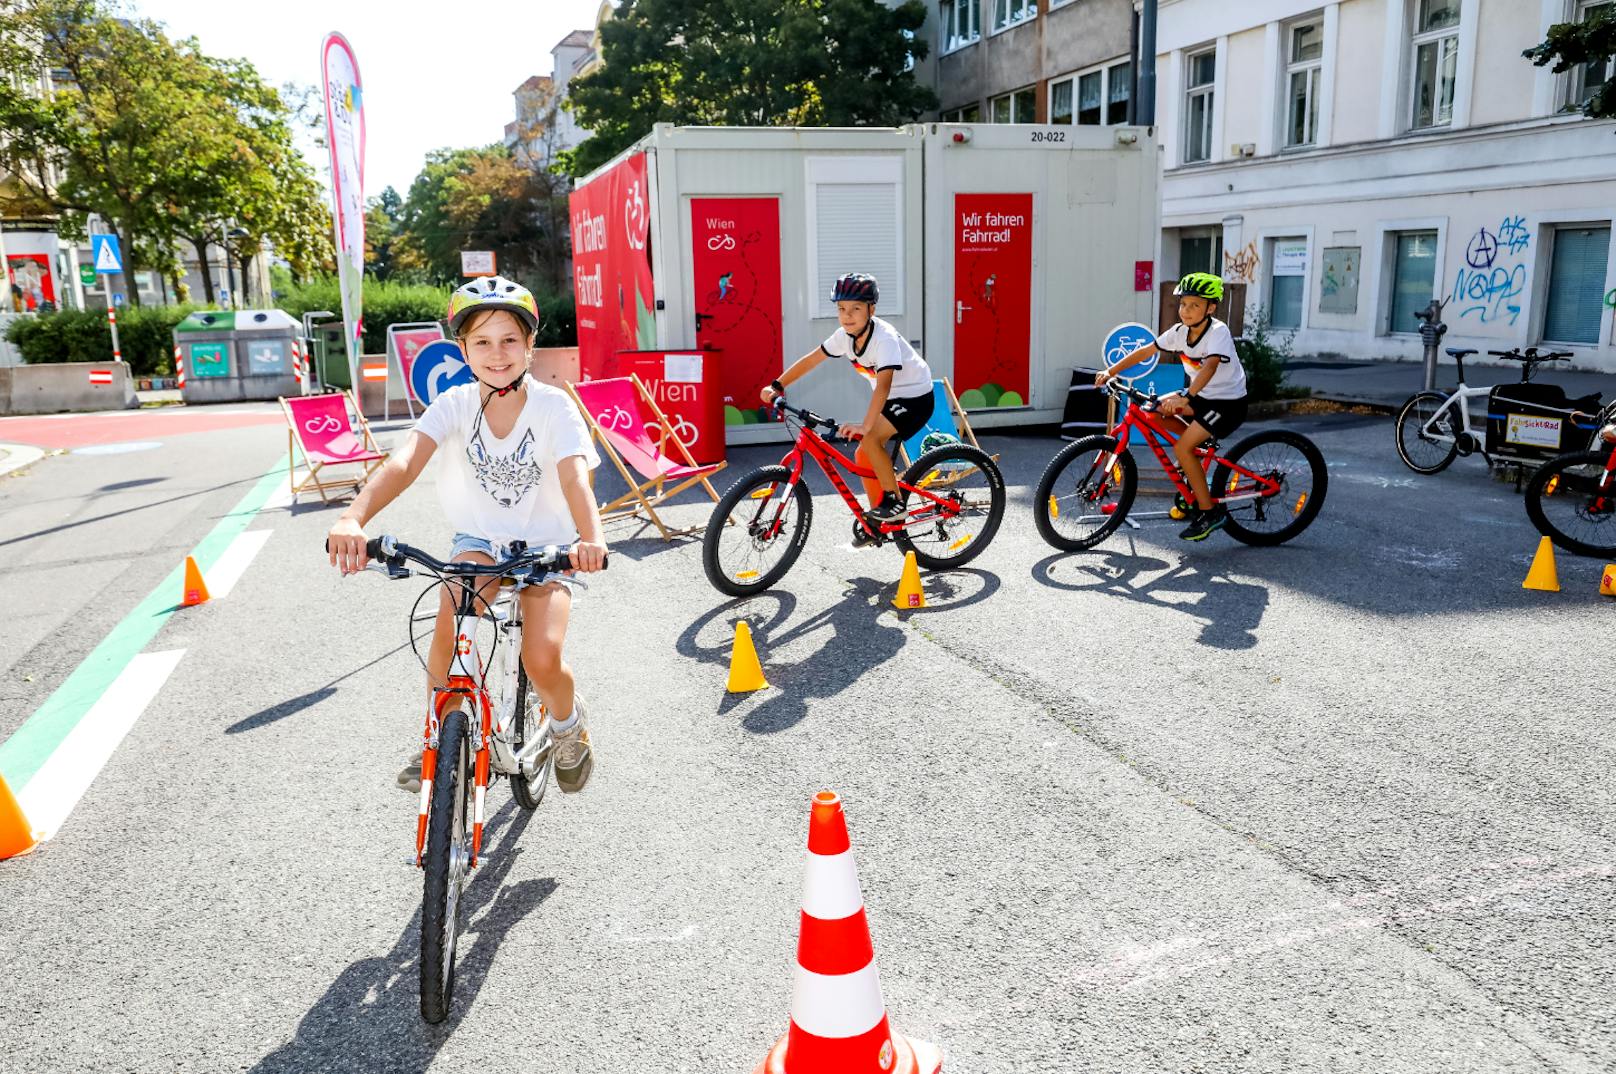 Für den Nachwuchs bietet die Mobilitätsagentur Wien kostenlose Radfahrkurse an. Gebucht werden können sie von Pädagogen.